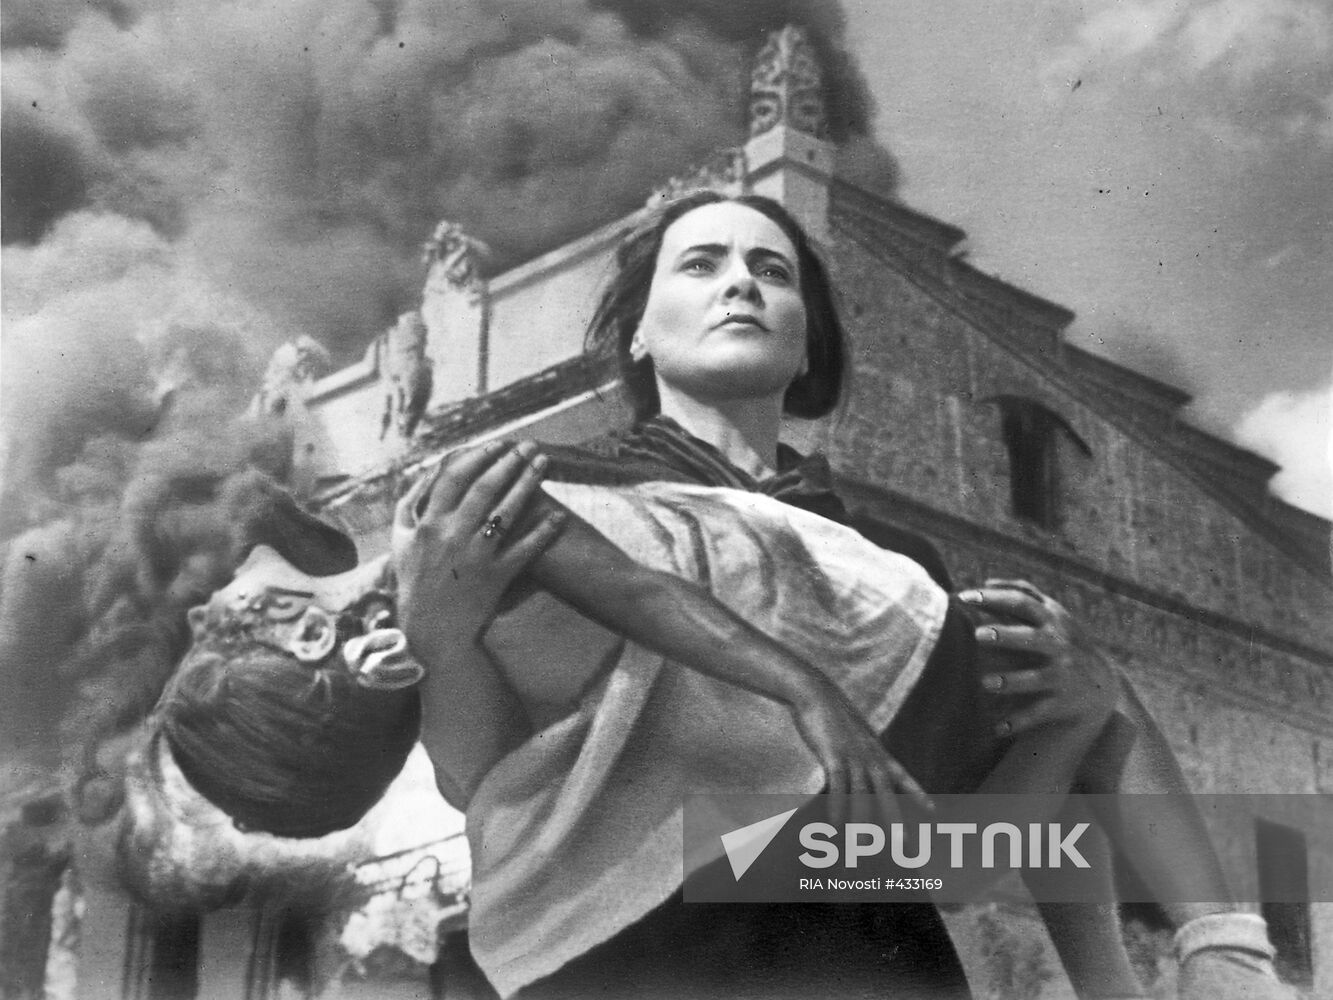 Still shot from movie Battle of Stalingrad